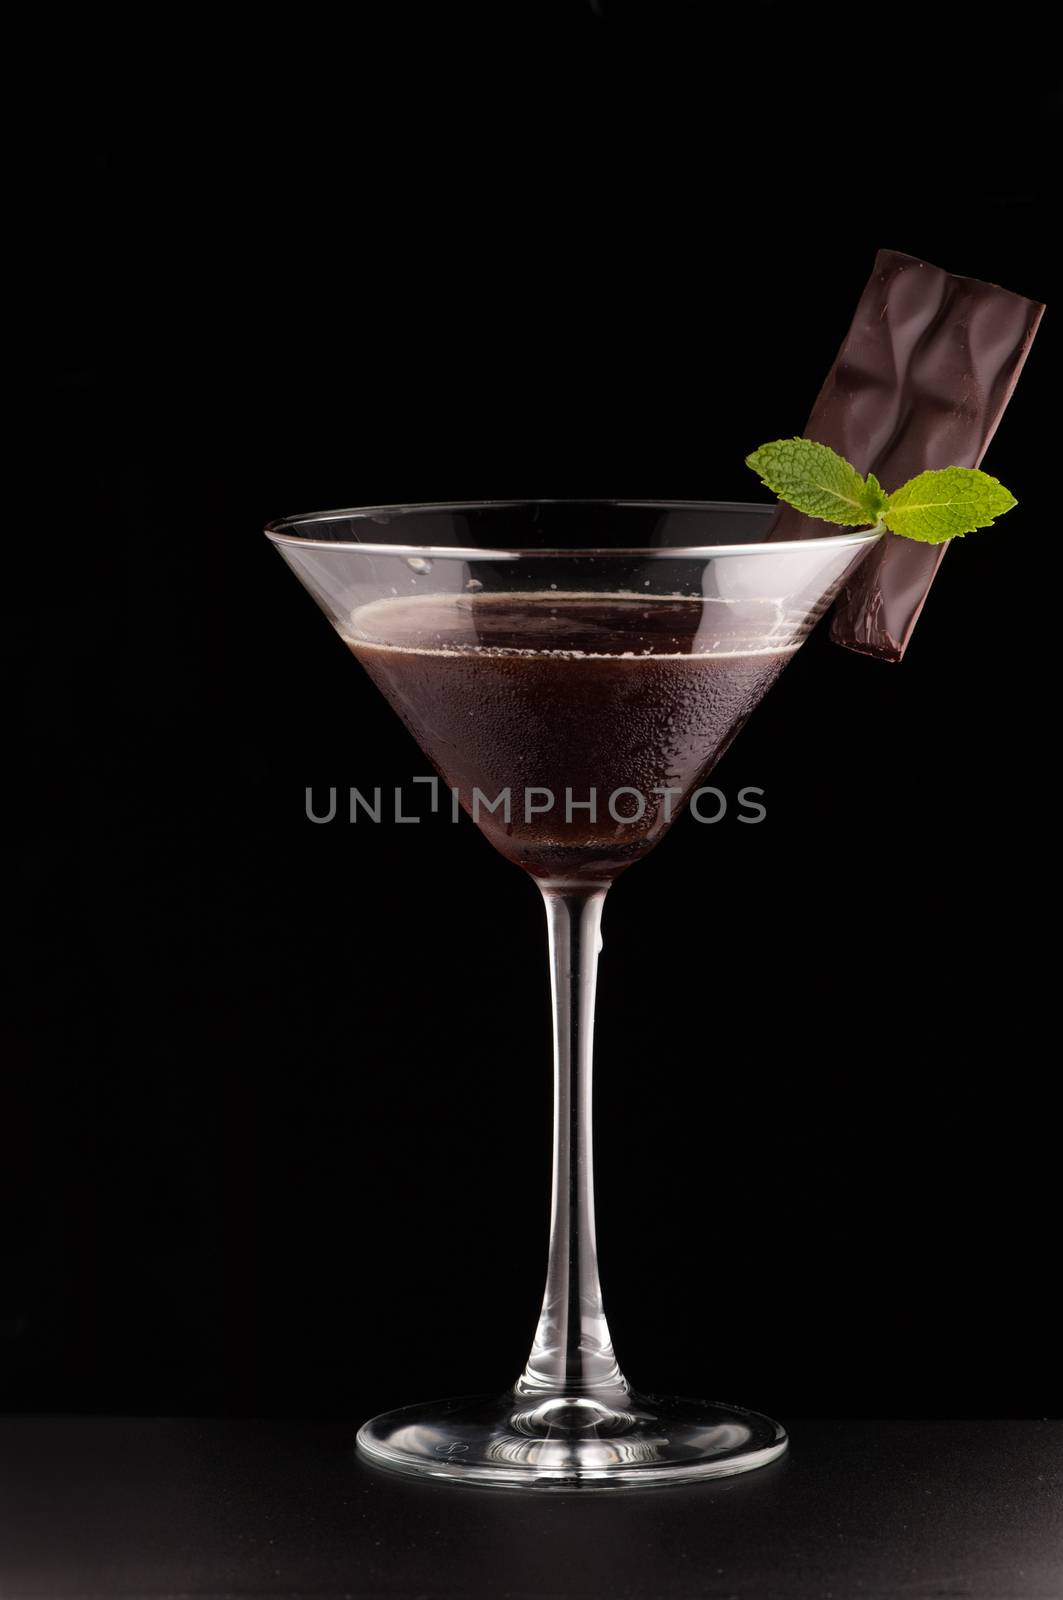 beverages on a dark background by A_Karim